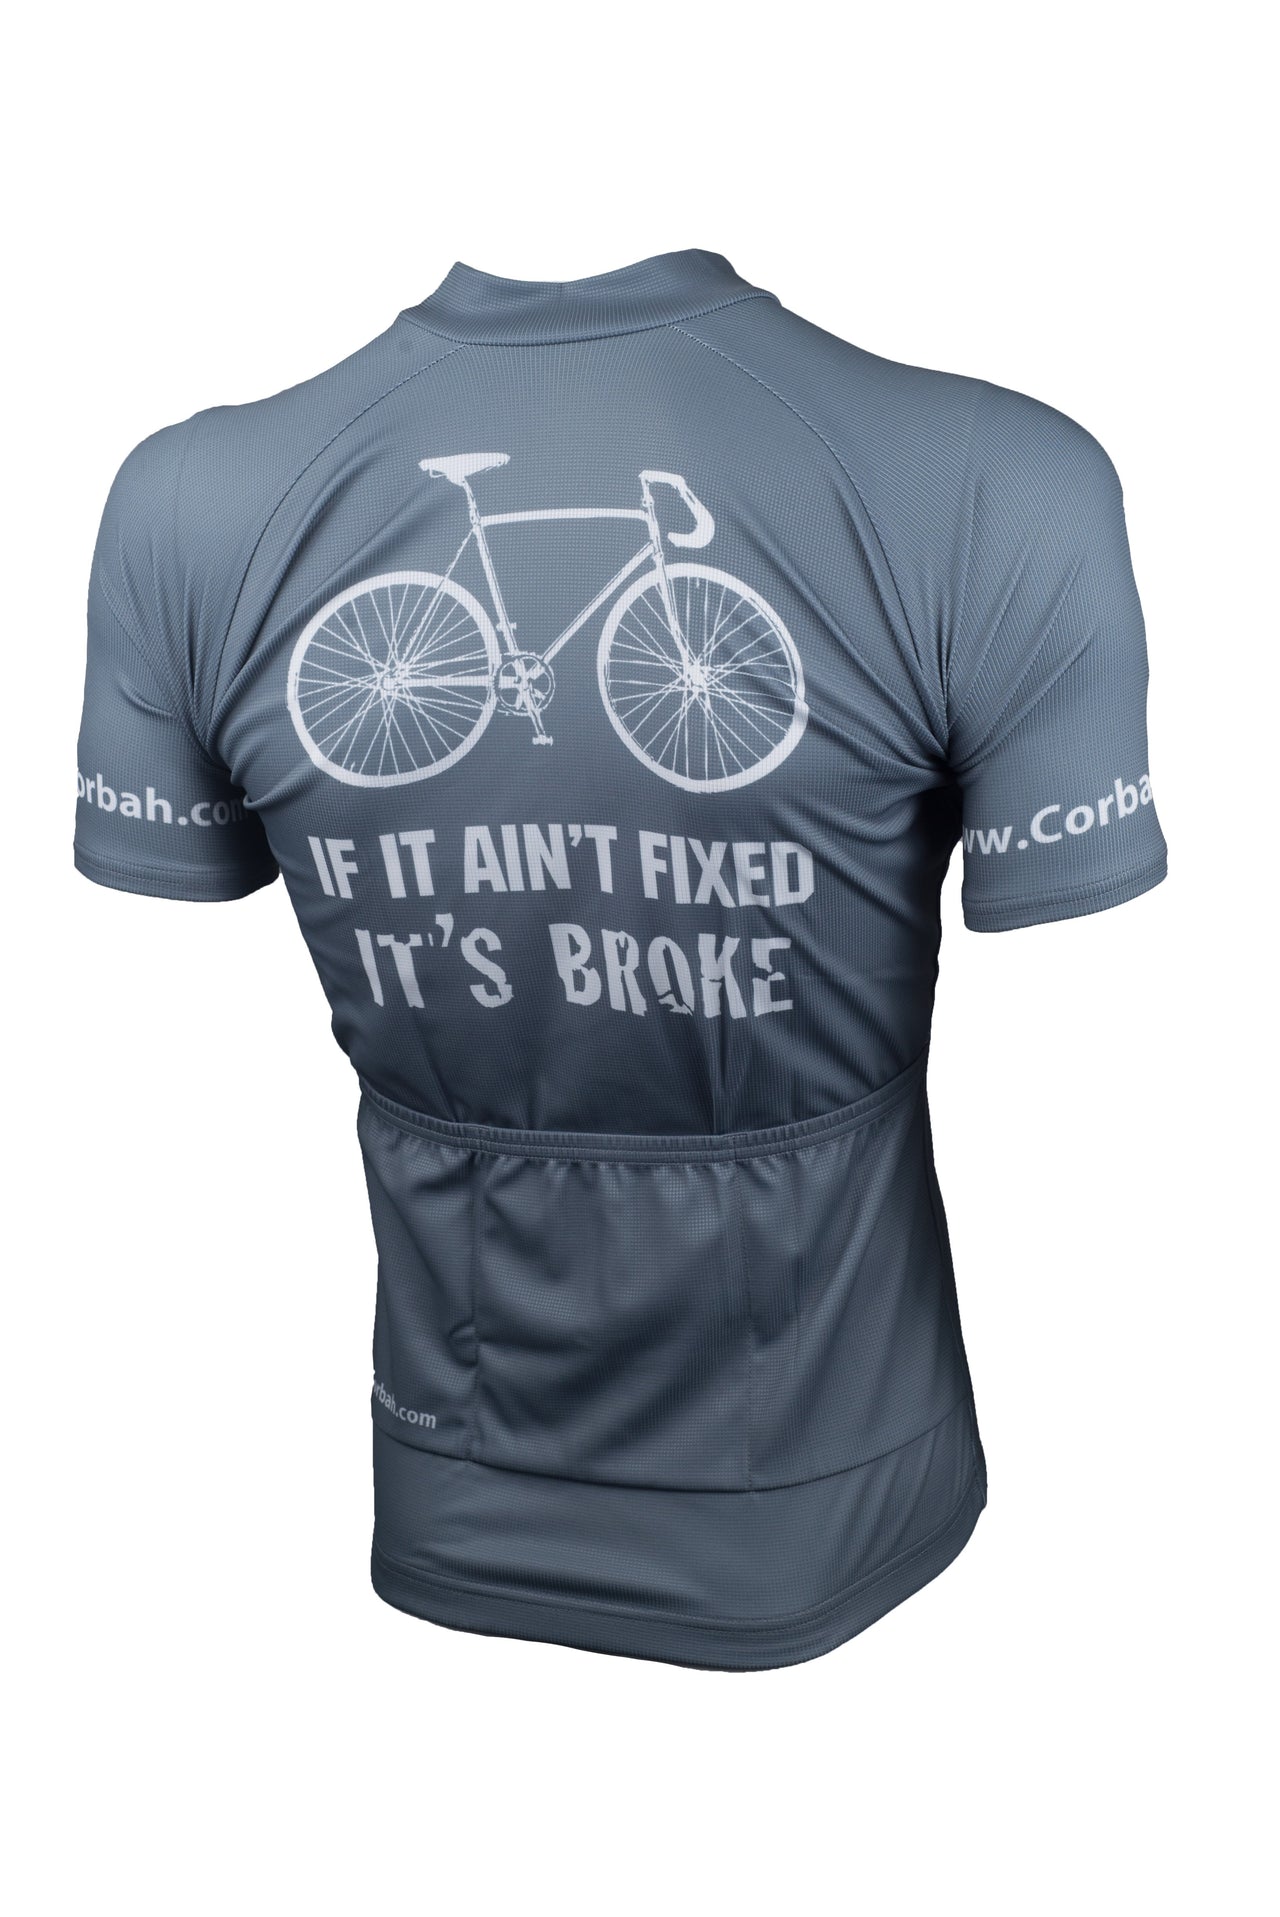 If It Ain't Fixed, It's Broke Cycling Jersey corbah